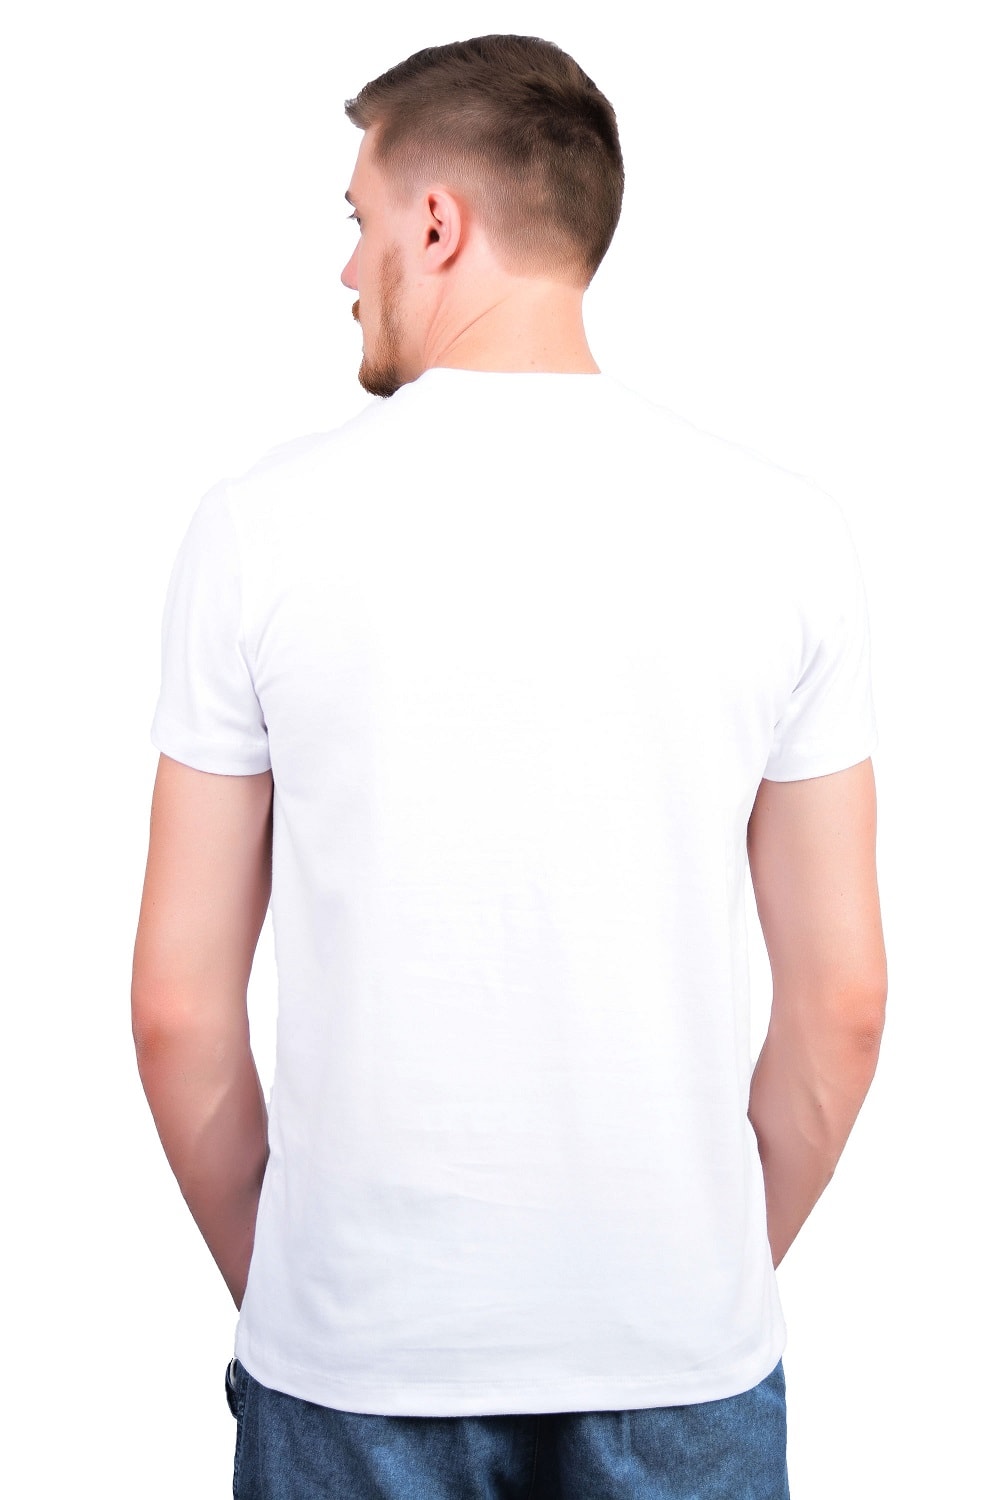 Featured image of post Camisa Branca Costas Png Camisa branca perfeita para usar em seus projetos e expor suas ideias na hora de criar uma camisa personalizada seja para qualquer fim